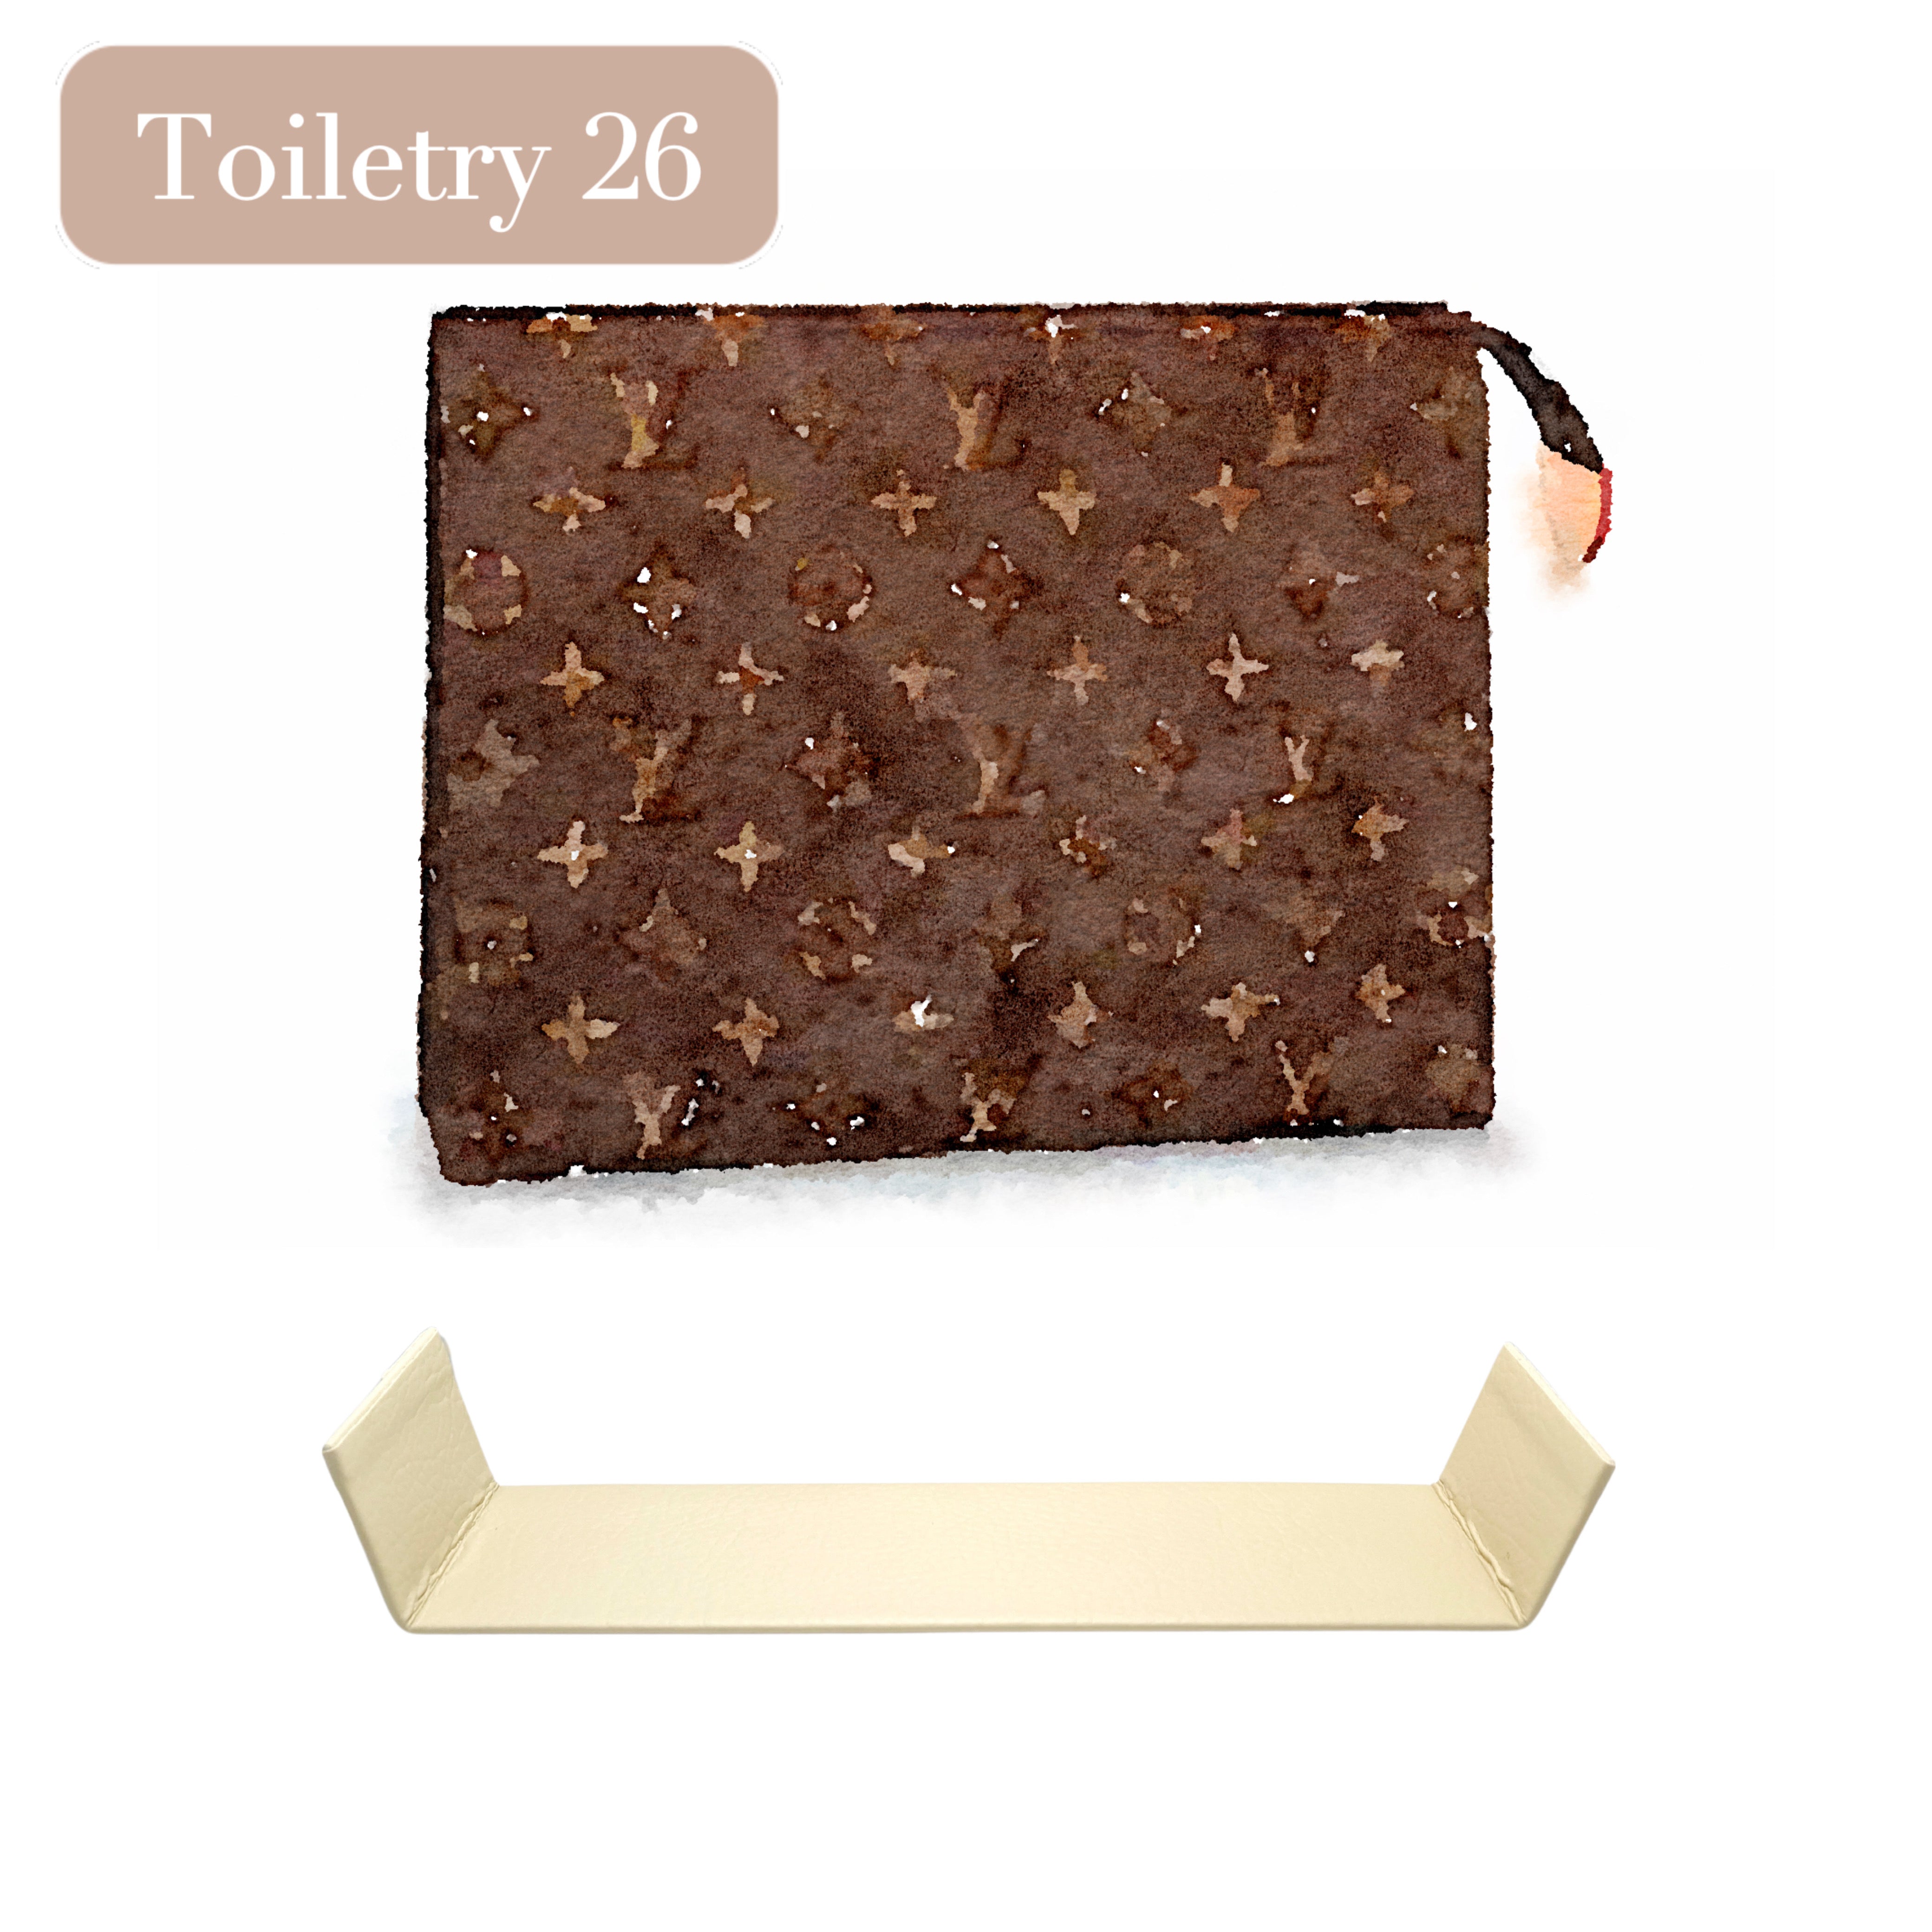 Louis Vuitton Toiletry 26